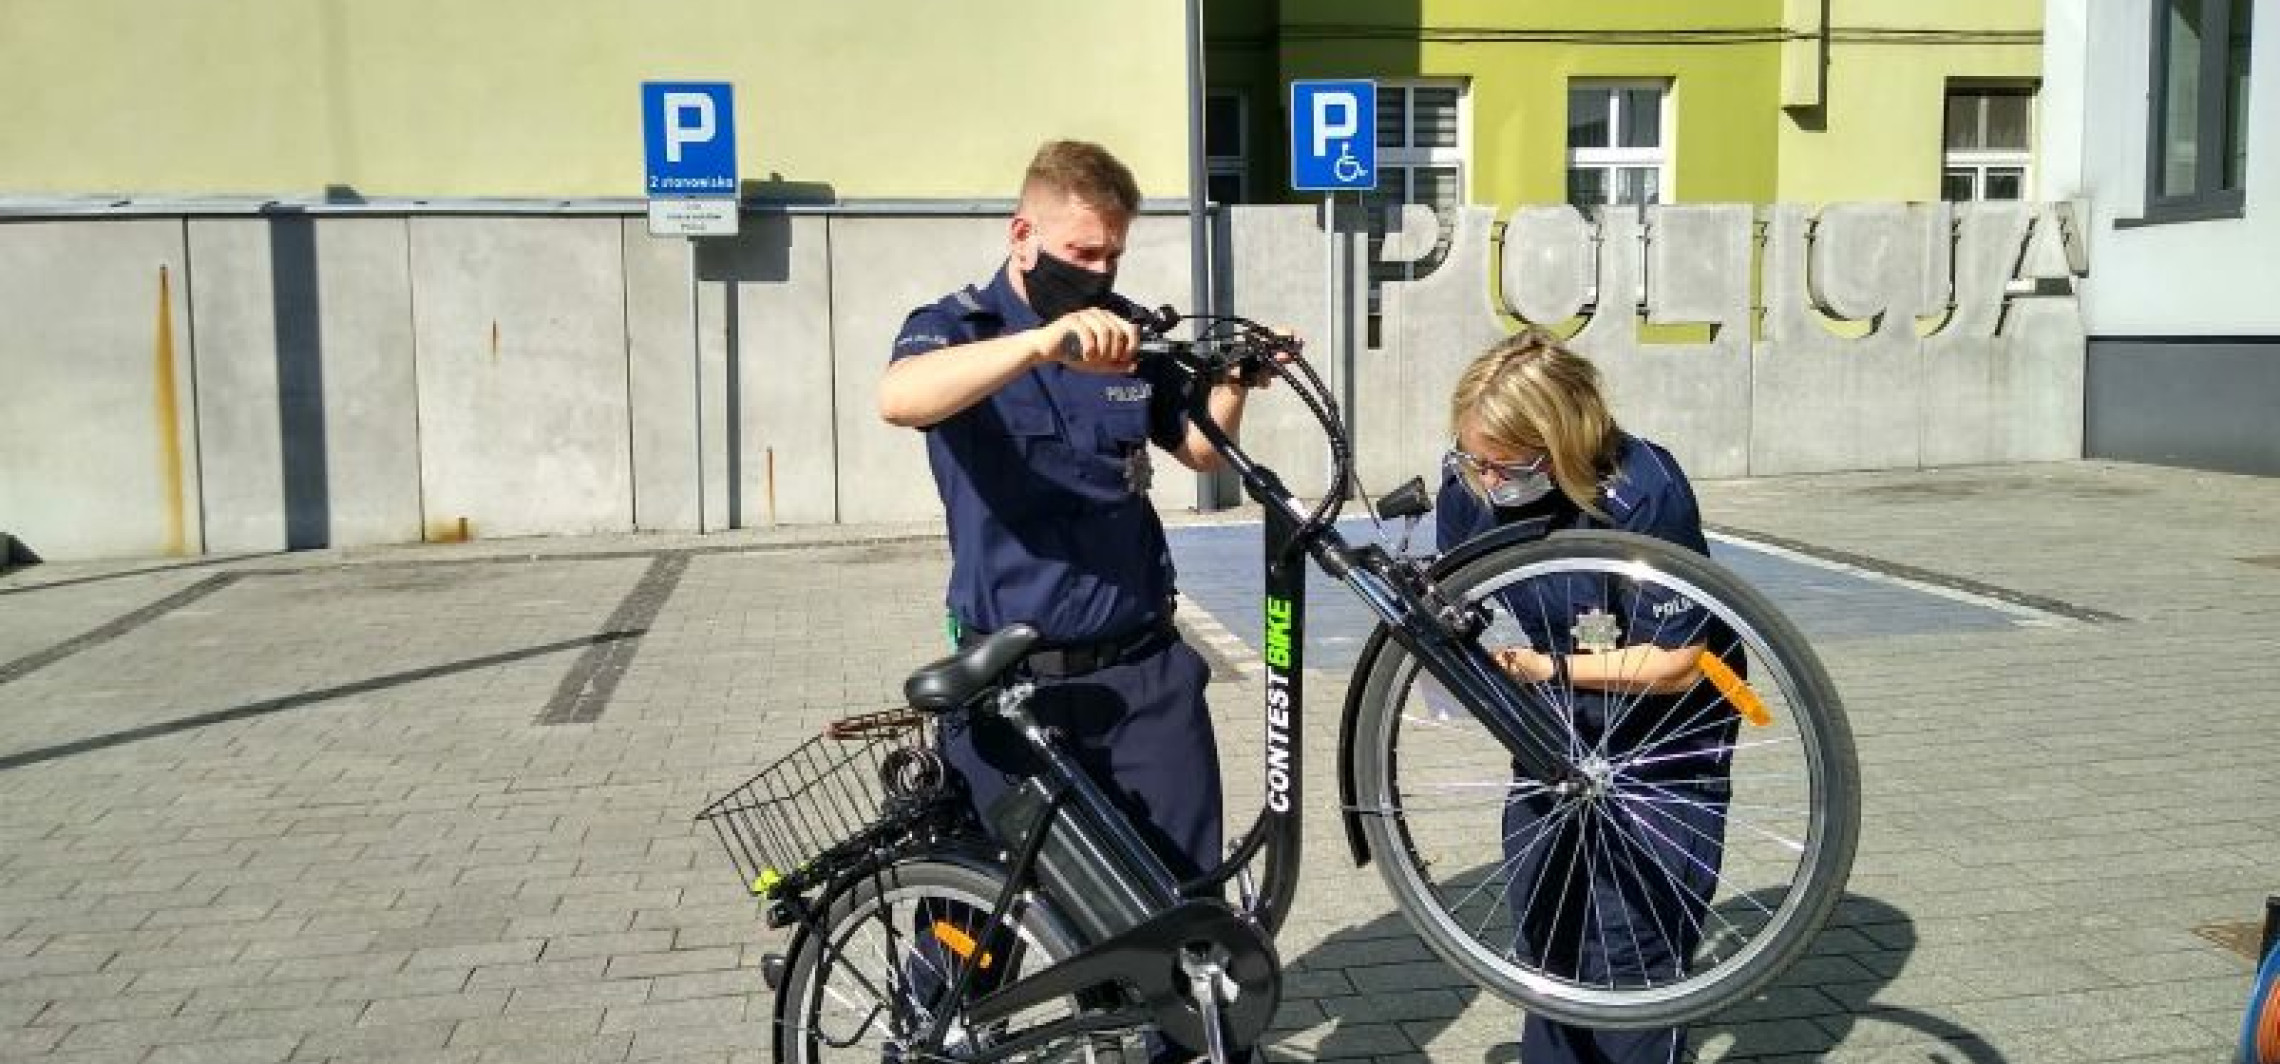 Inowrocław - Policja przeprowadziła akcję znakowania rowerów